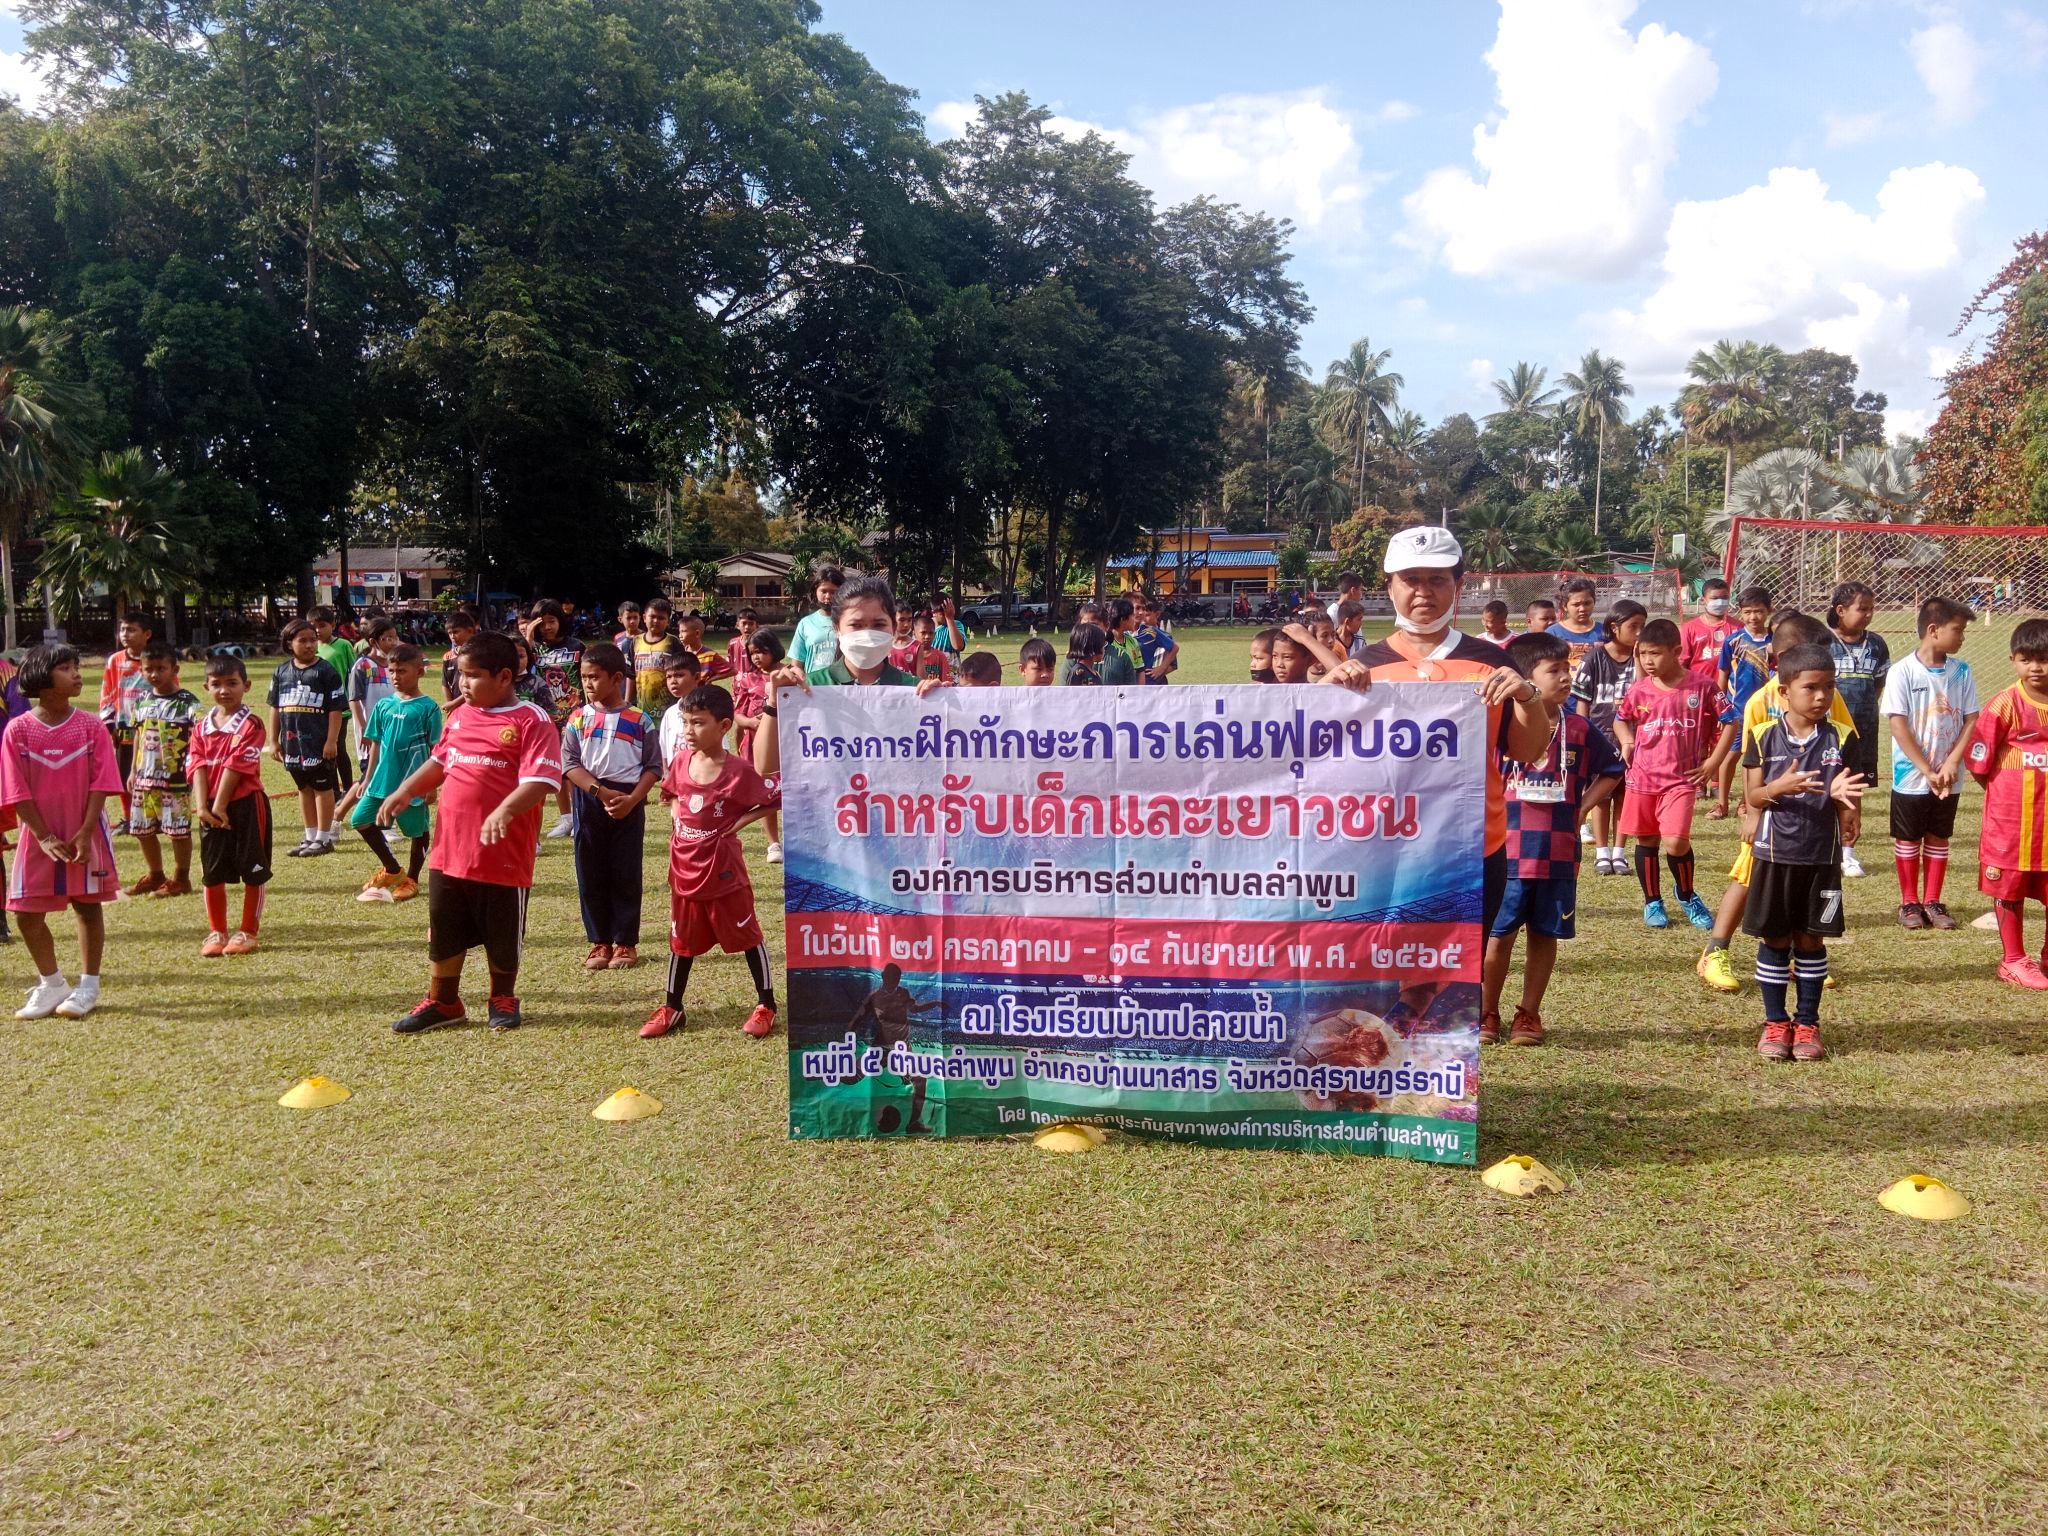 ประมวลภาพกิจกรรมโครงการฝึกทักษะการเล่นฟุตบอล สำหรับเด็กและเยาวชน องค์การบริหารส่วนตำบลลำพูน ในวันที่ 27 กรกฎาคม 2565-15 กันยายน 2565 